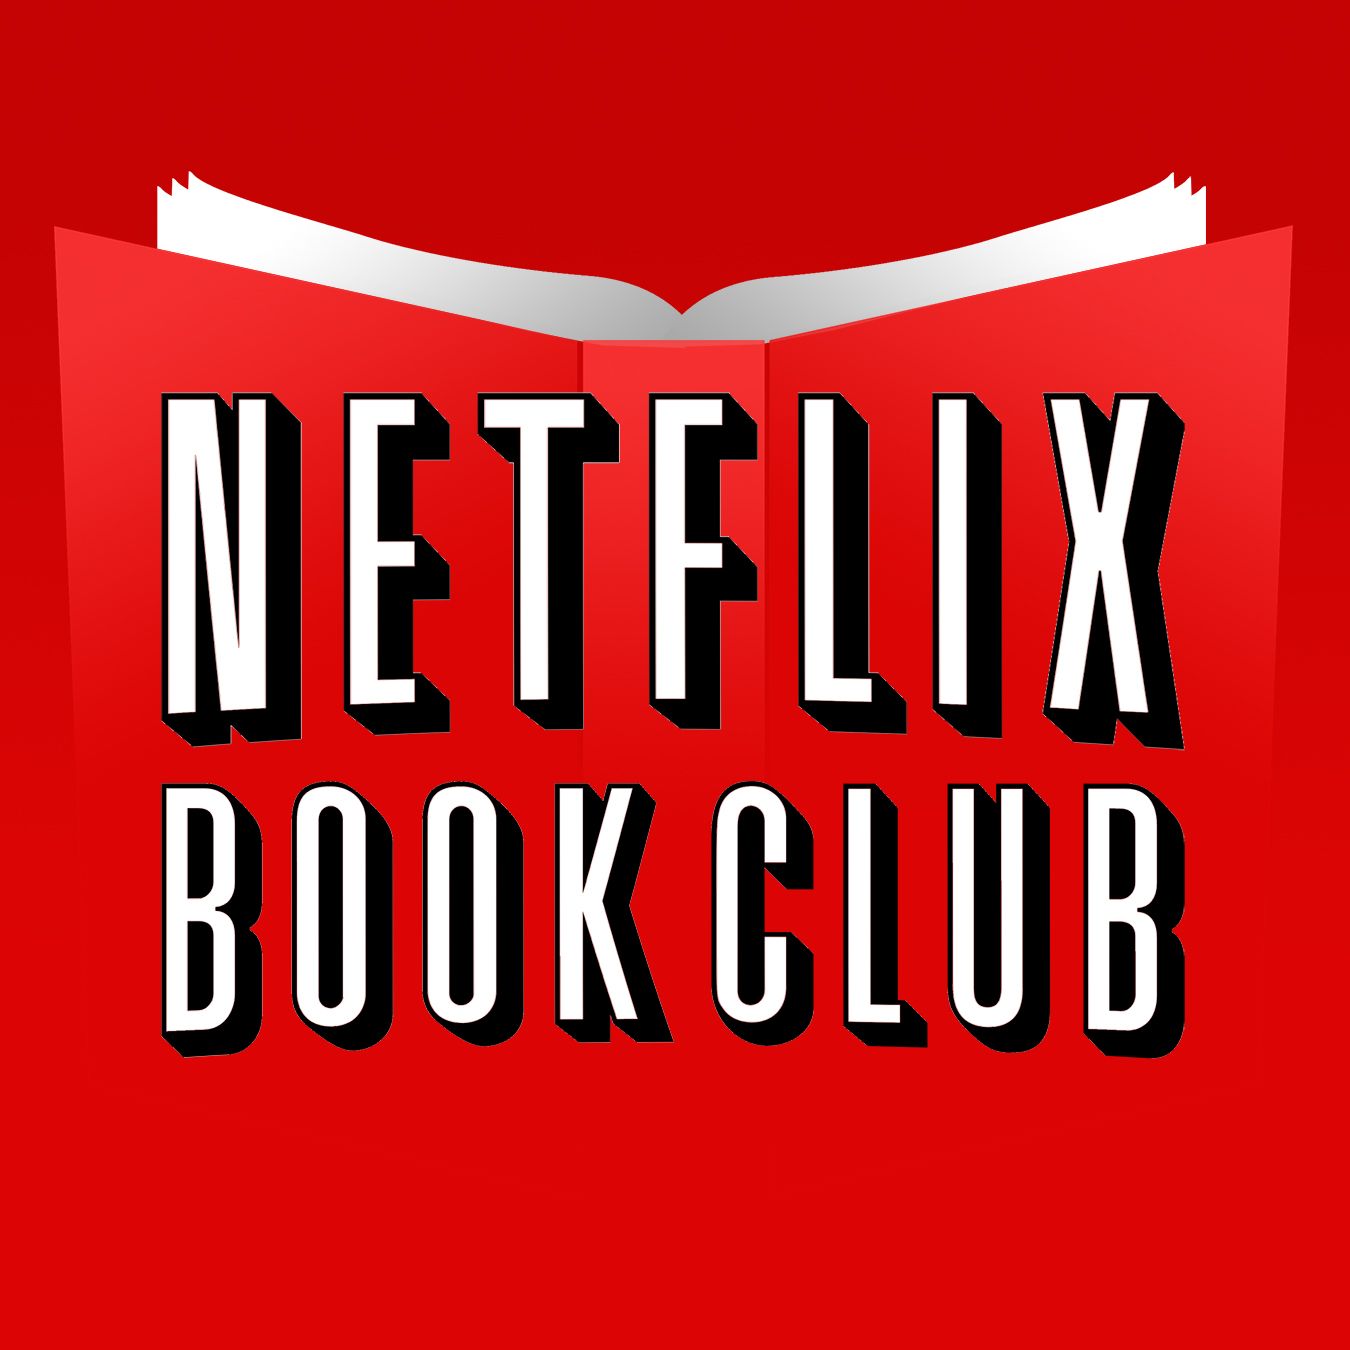 Books about Netflix